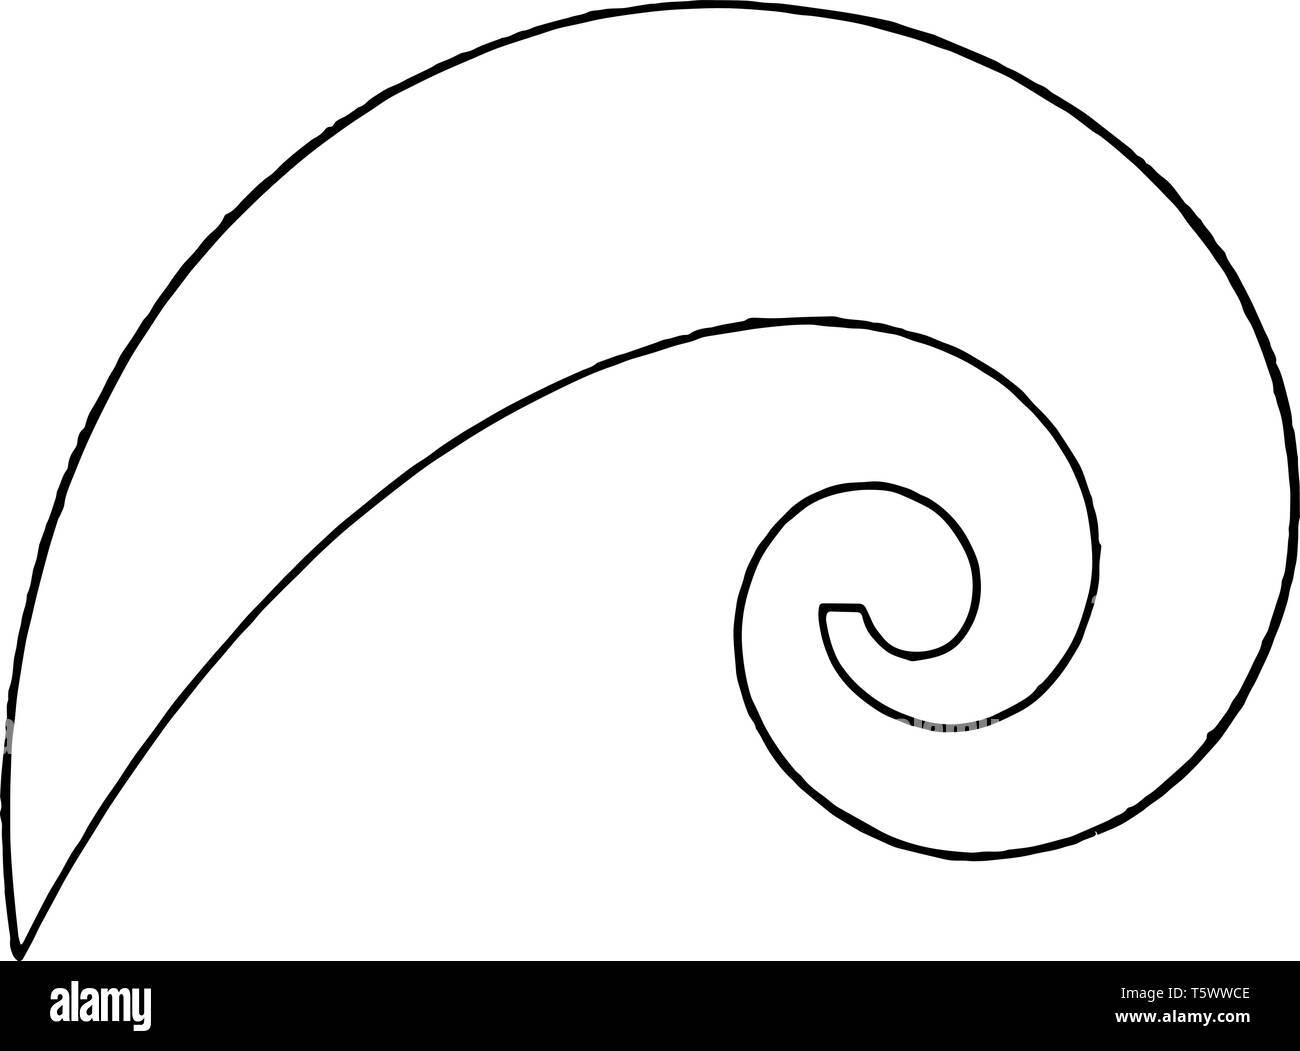 Spirale logaritmica curva curve francese è di circa strettamente sagomato ad una cicloide è utilizzato per disegnare a corto raggio ellittico curve utilizzando punti vin Illustrazione Vettoriale